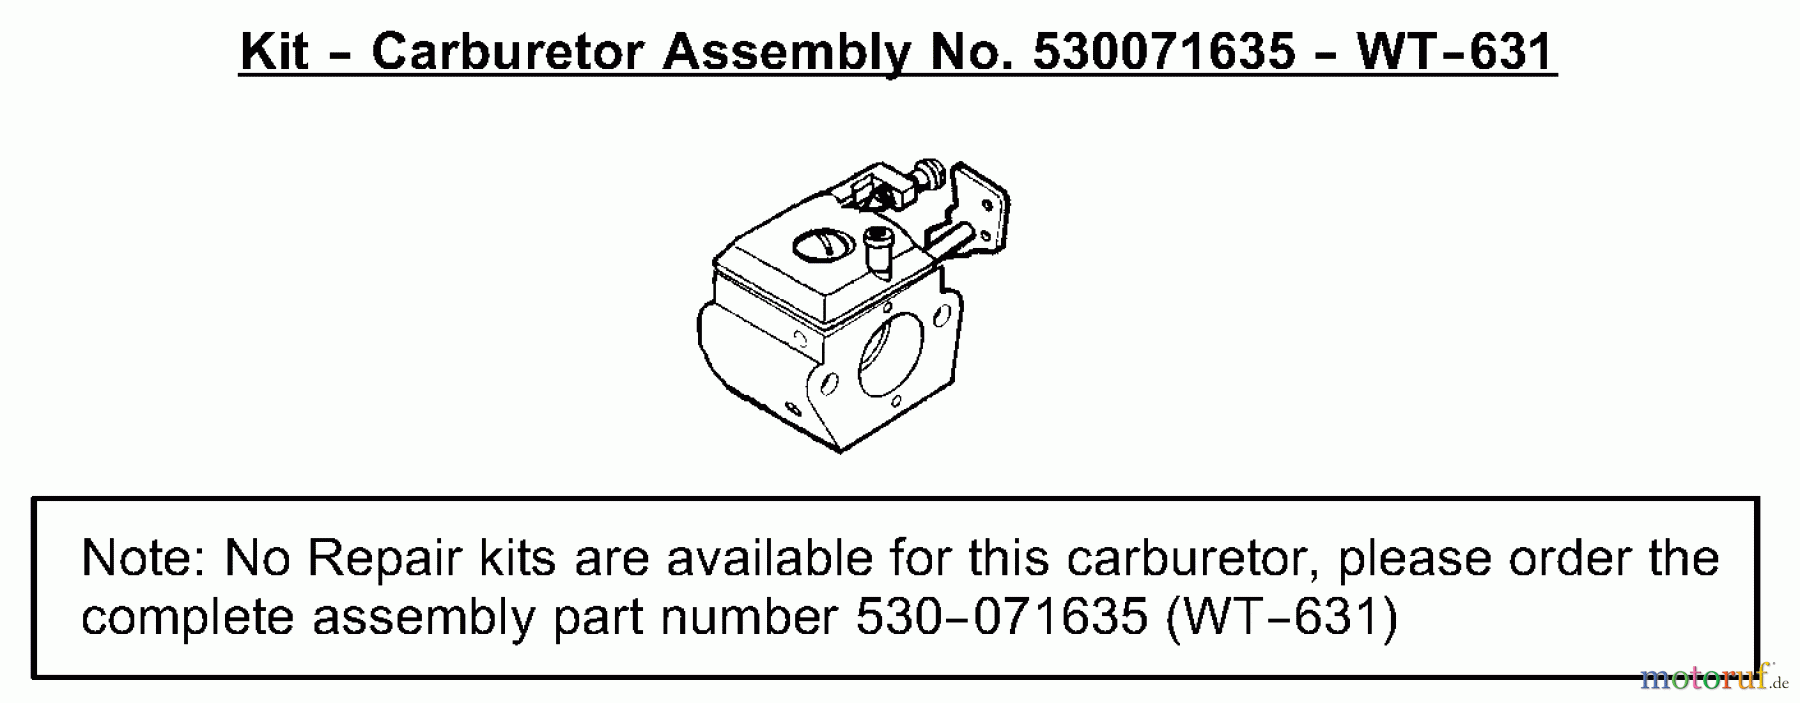  Poulan / Weed Eater Motorsensen, Trimmer SST25 (Type 2) - Weed Eater Featherlite HO String Trimmer Carburetor Assembly (WT-631) P/N 530071635